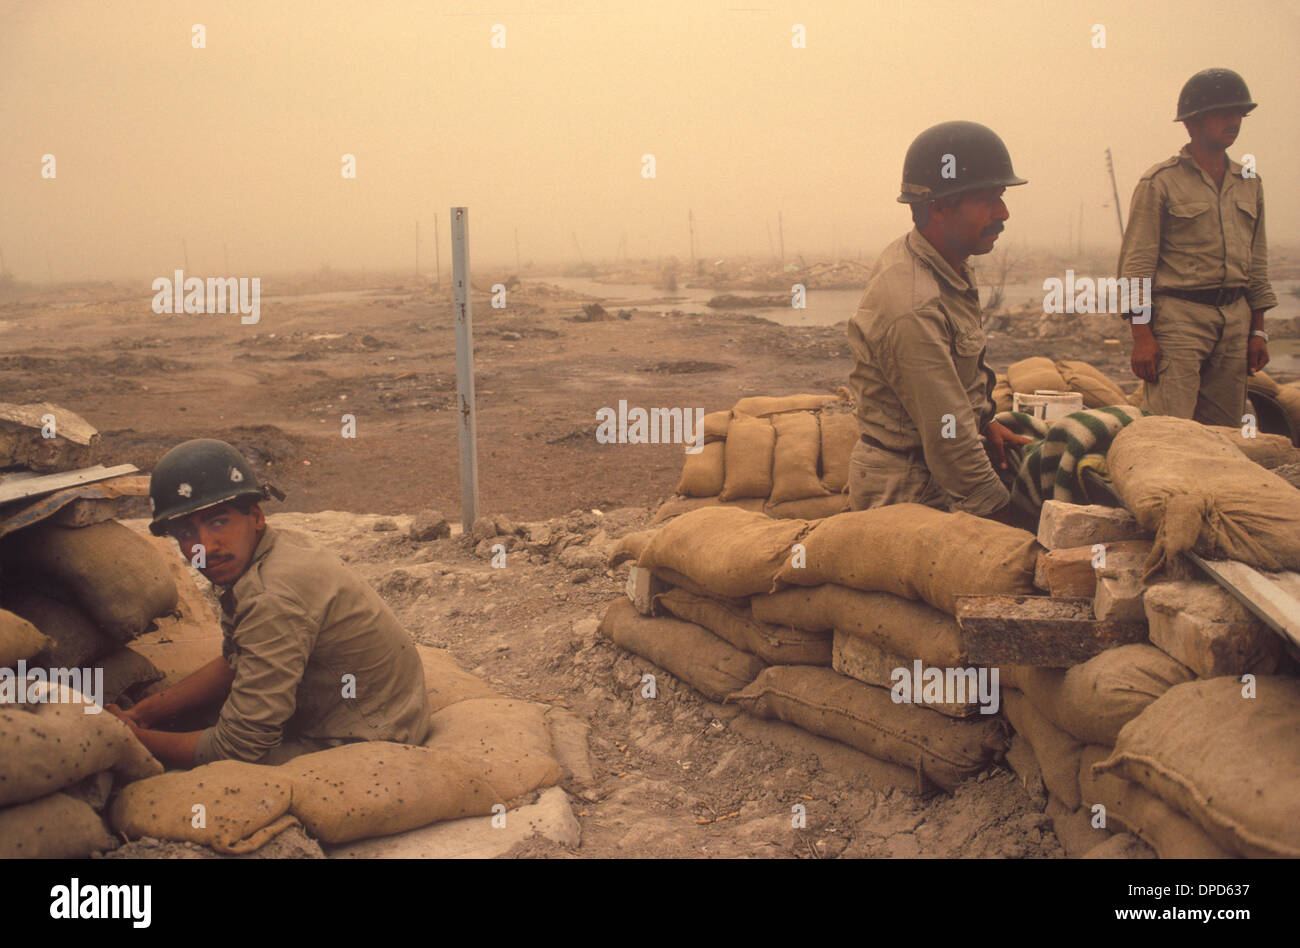 Iranirakkrieg, auch bekannt als erster persischer Golfkrieg oder Golfkrieg. 1984 Soldat, der sich von der jüngsten Schlacht erholt hat, nimmt noch immer ihre Position unter den Verwüstungen des Krieges in den Mesopotamianischen Sümpfen ein. Ein Sandsturm in der Luft. Nahe Basra Südirak. 1980er HOMER SYKES Stockfoto